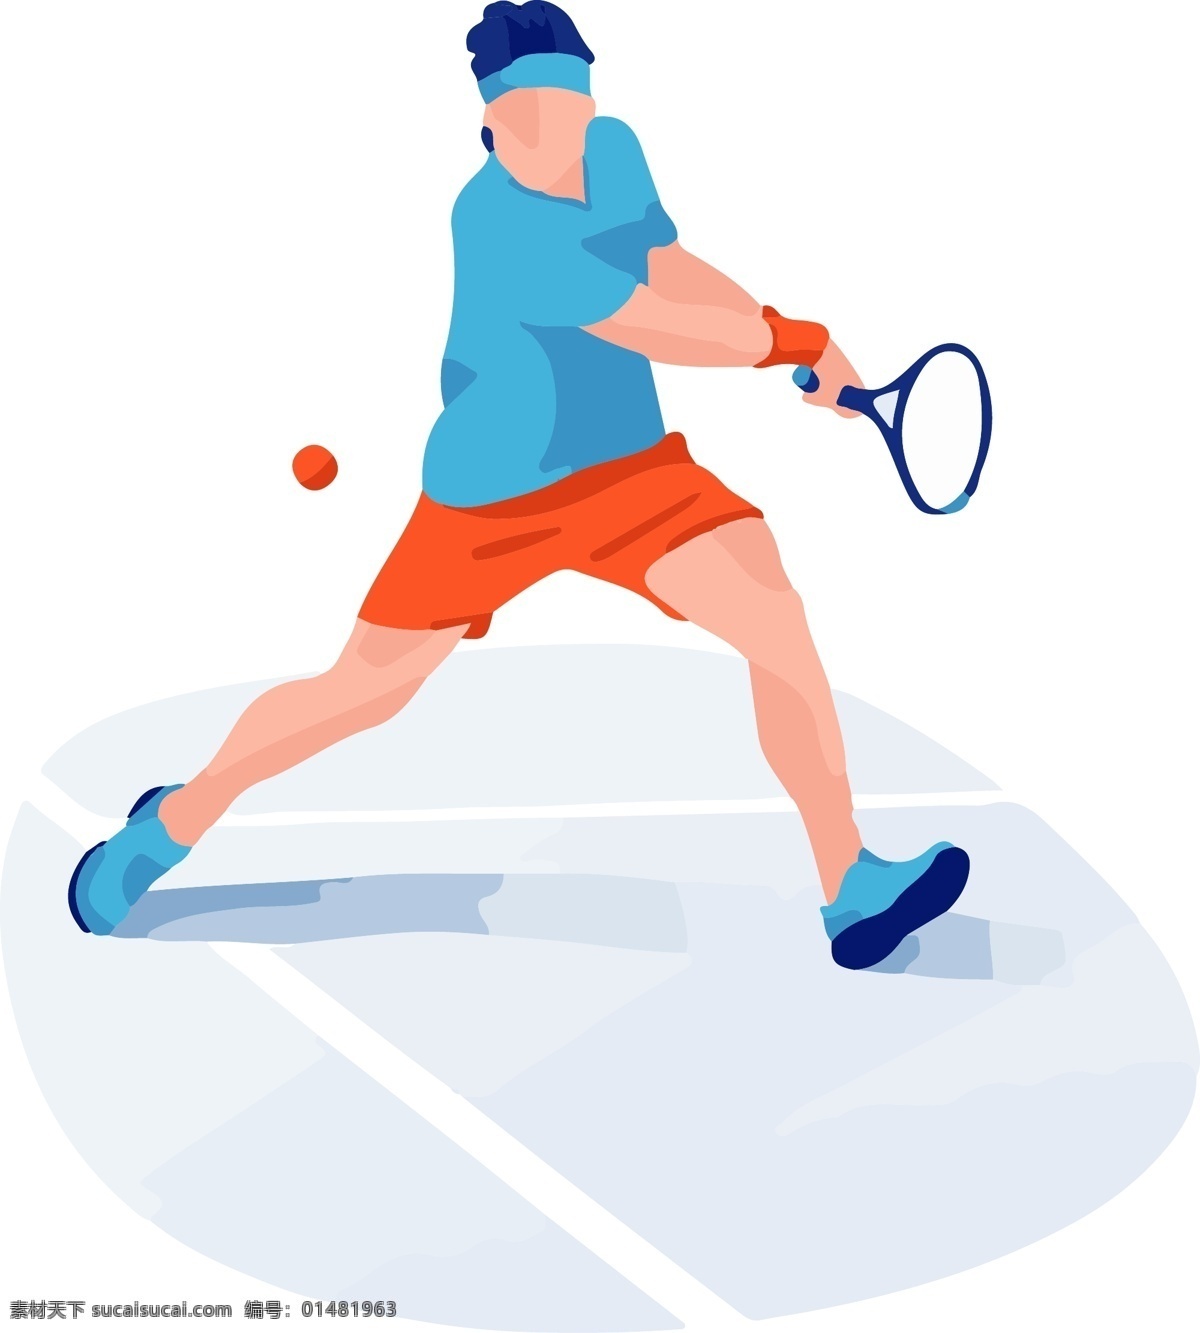 网球 运动 男子 动态 矢量 免 扣 网球运动 打球 动态场景化 网球健身 网球俱乐部 有氧运动 阴影立体风格